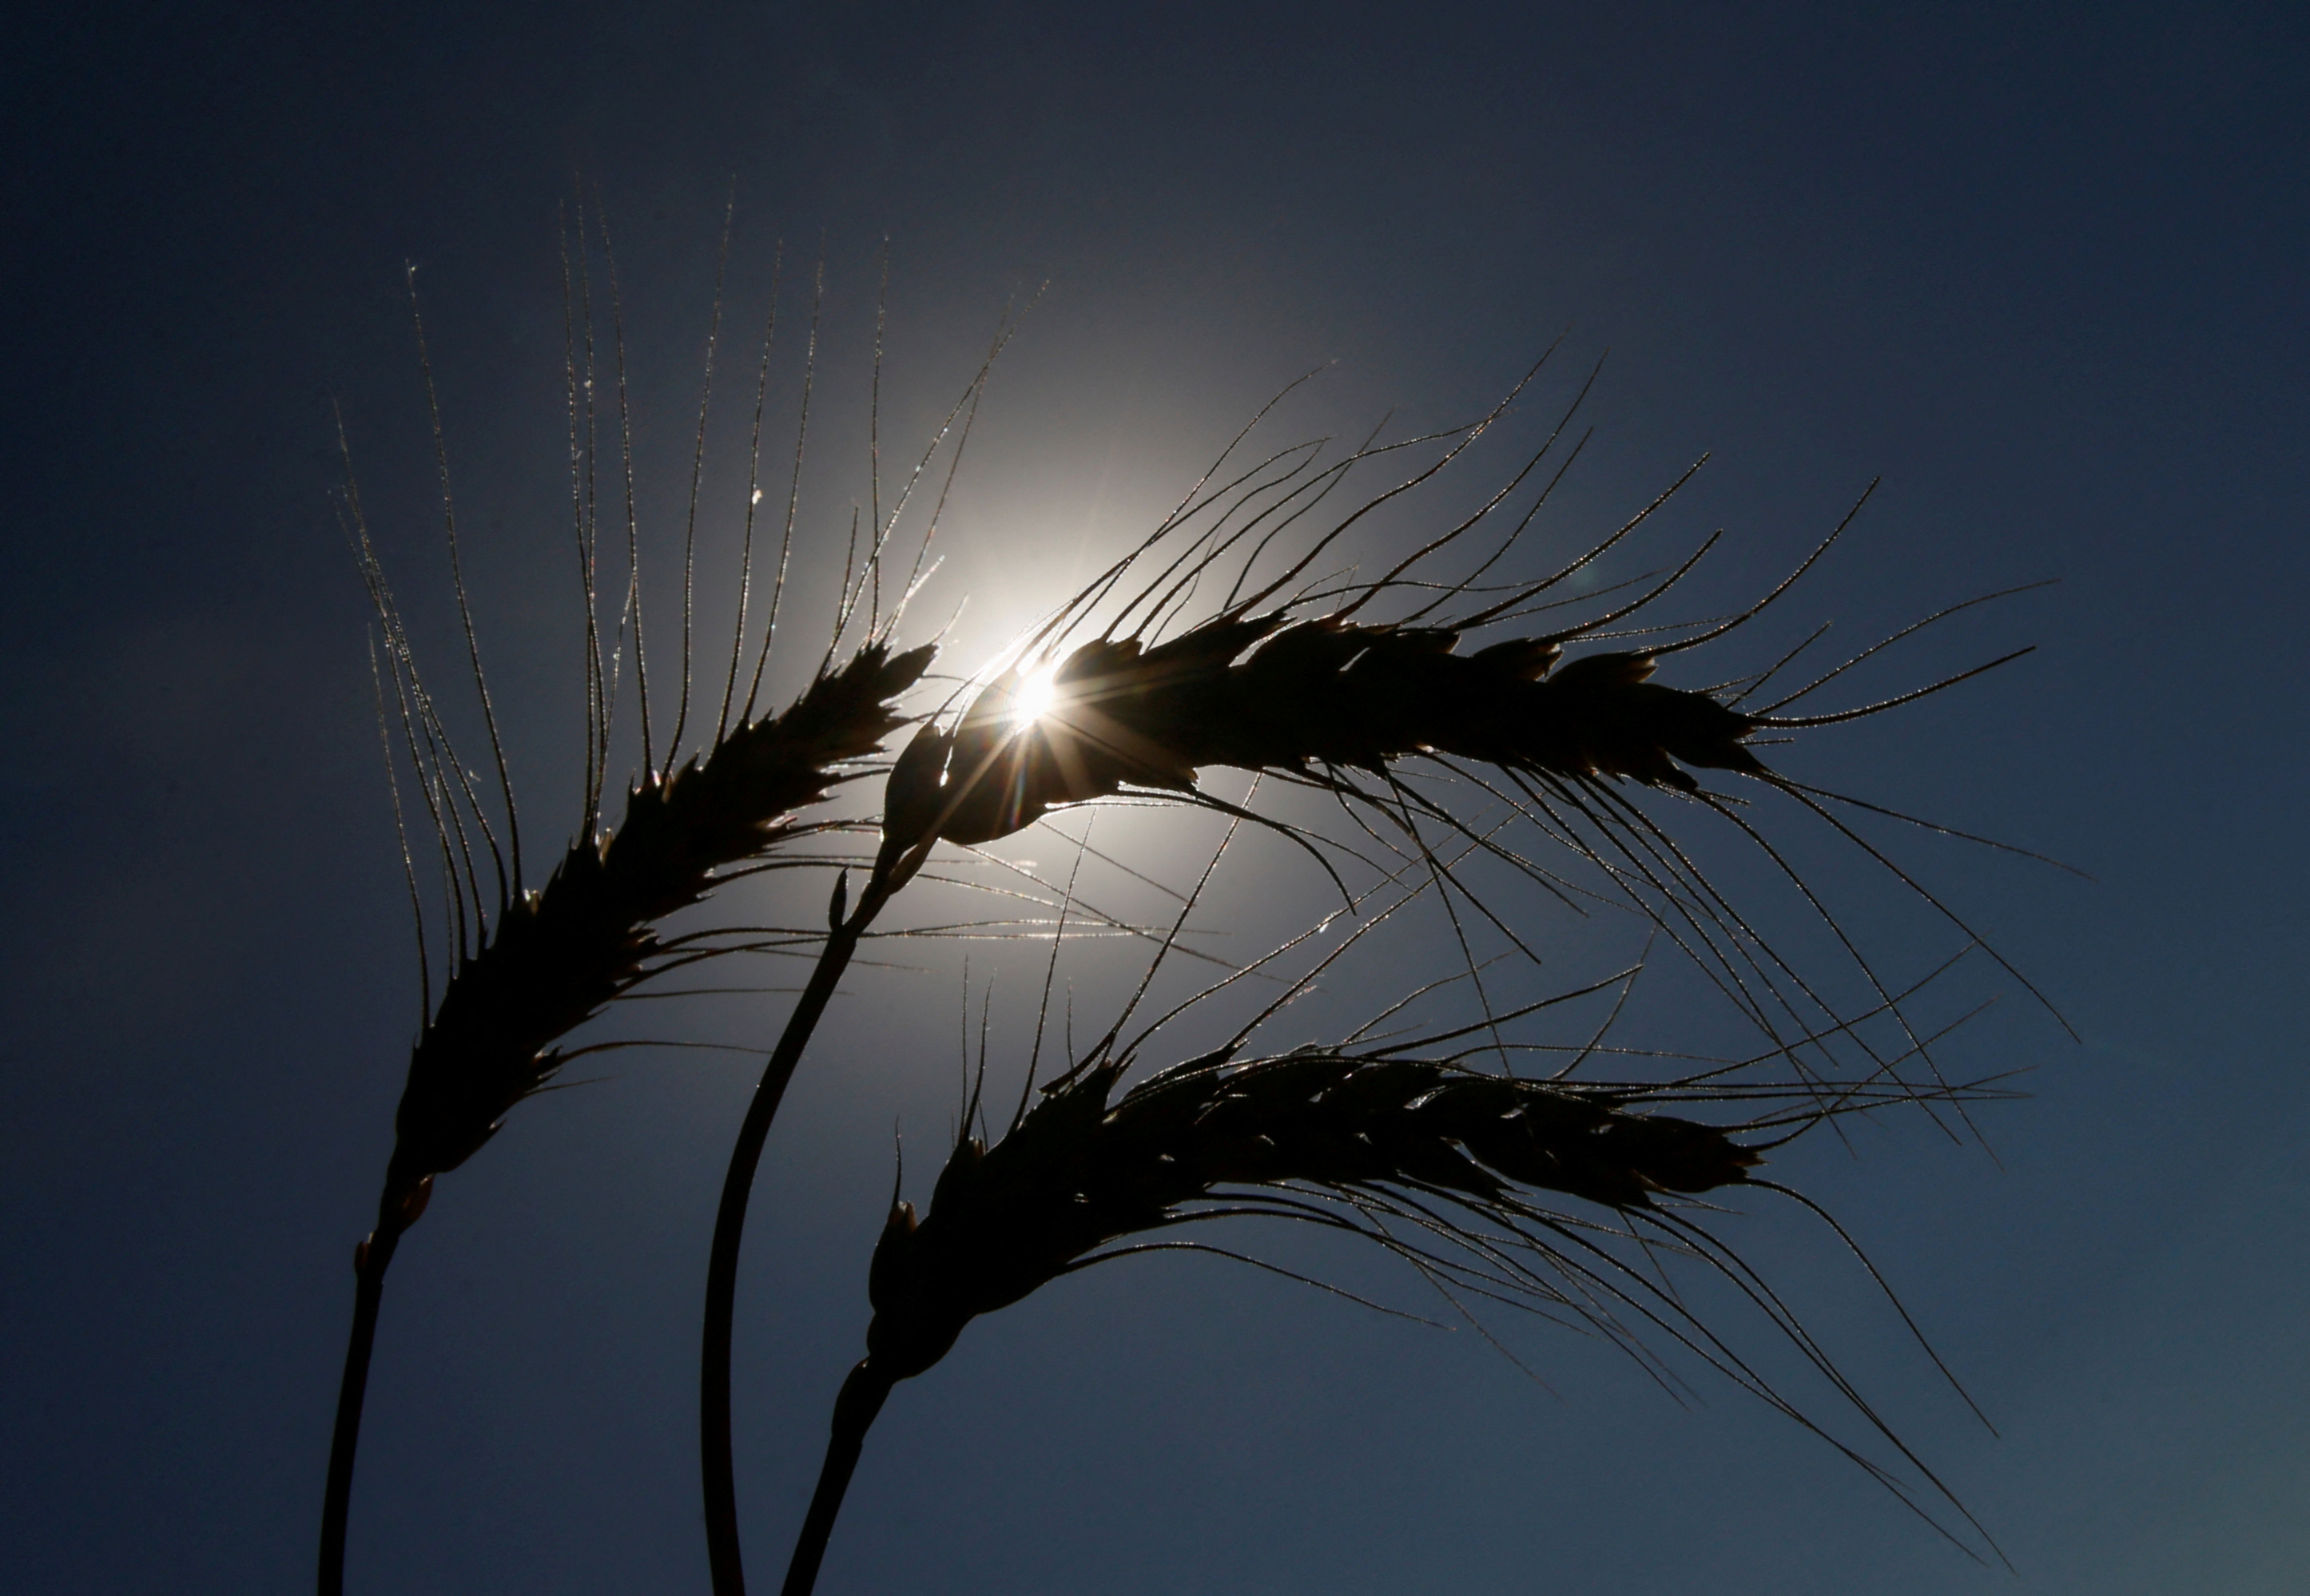 Ears of wheat are seen in field in Kiev region